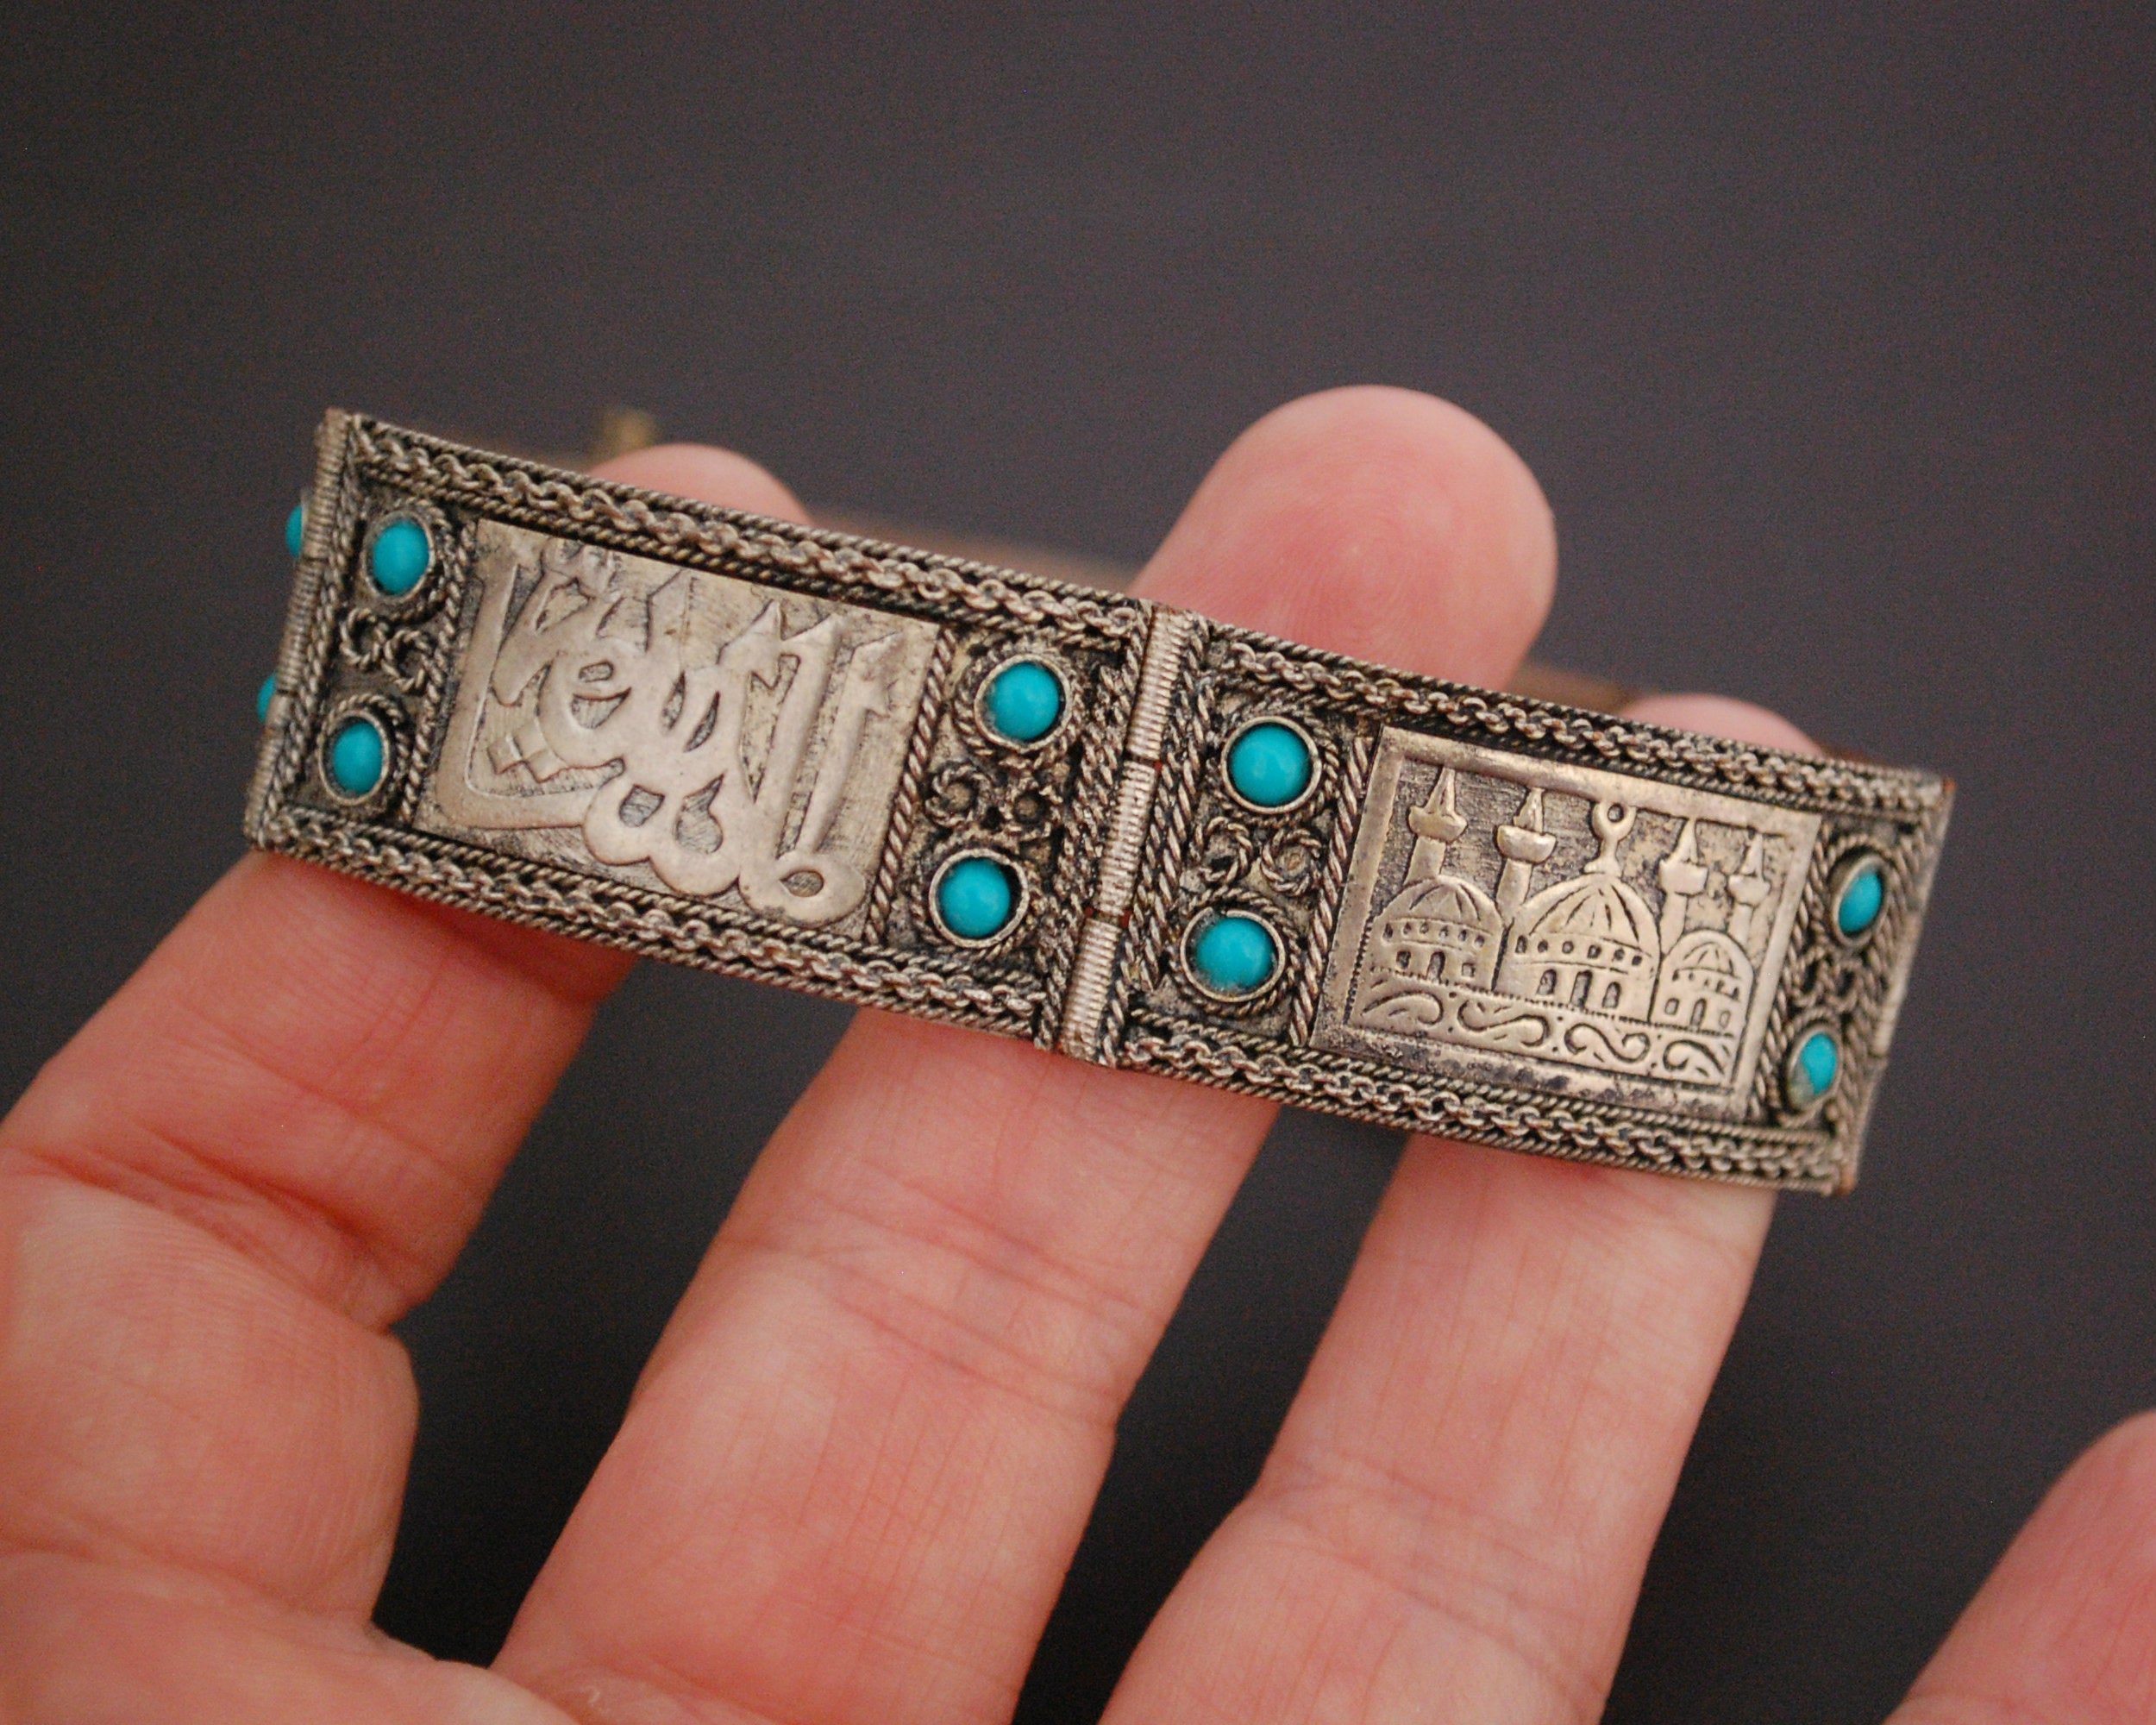 Turkish Hinged Bracelet with Turquoise